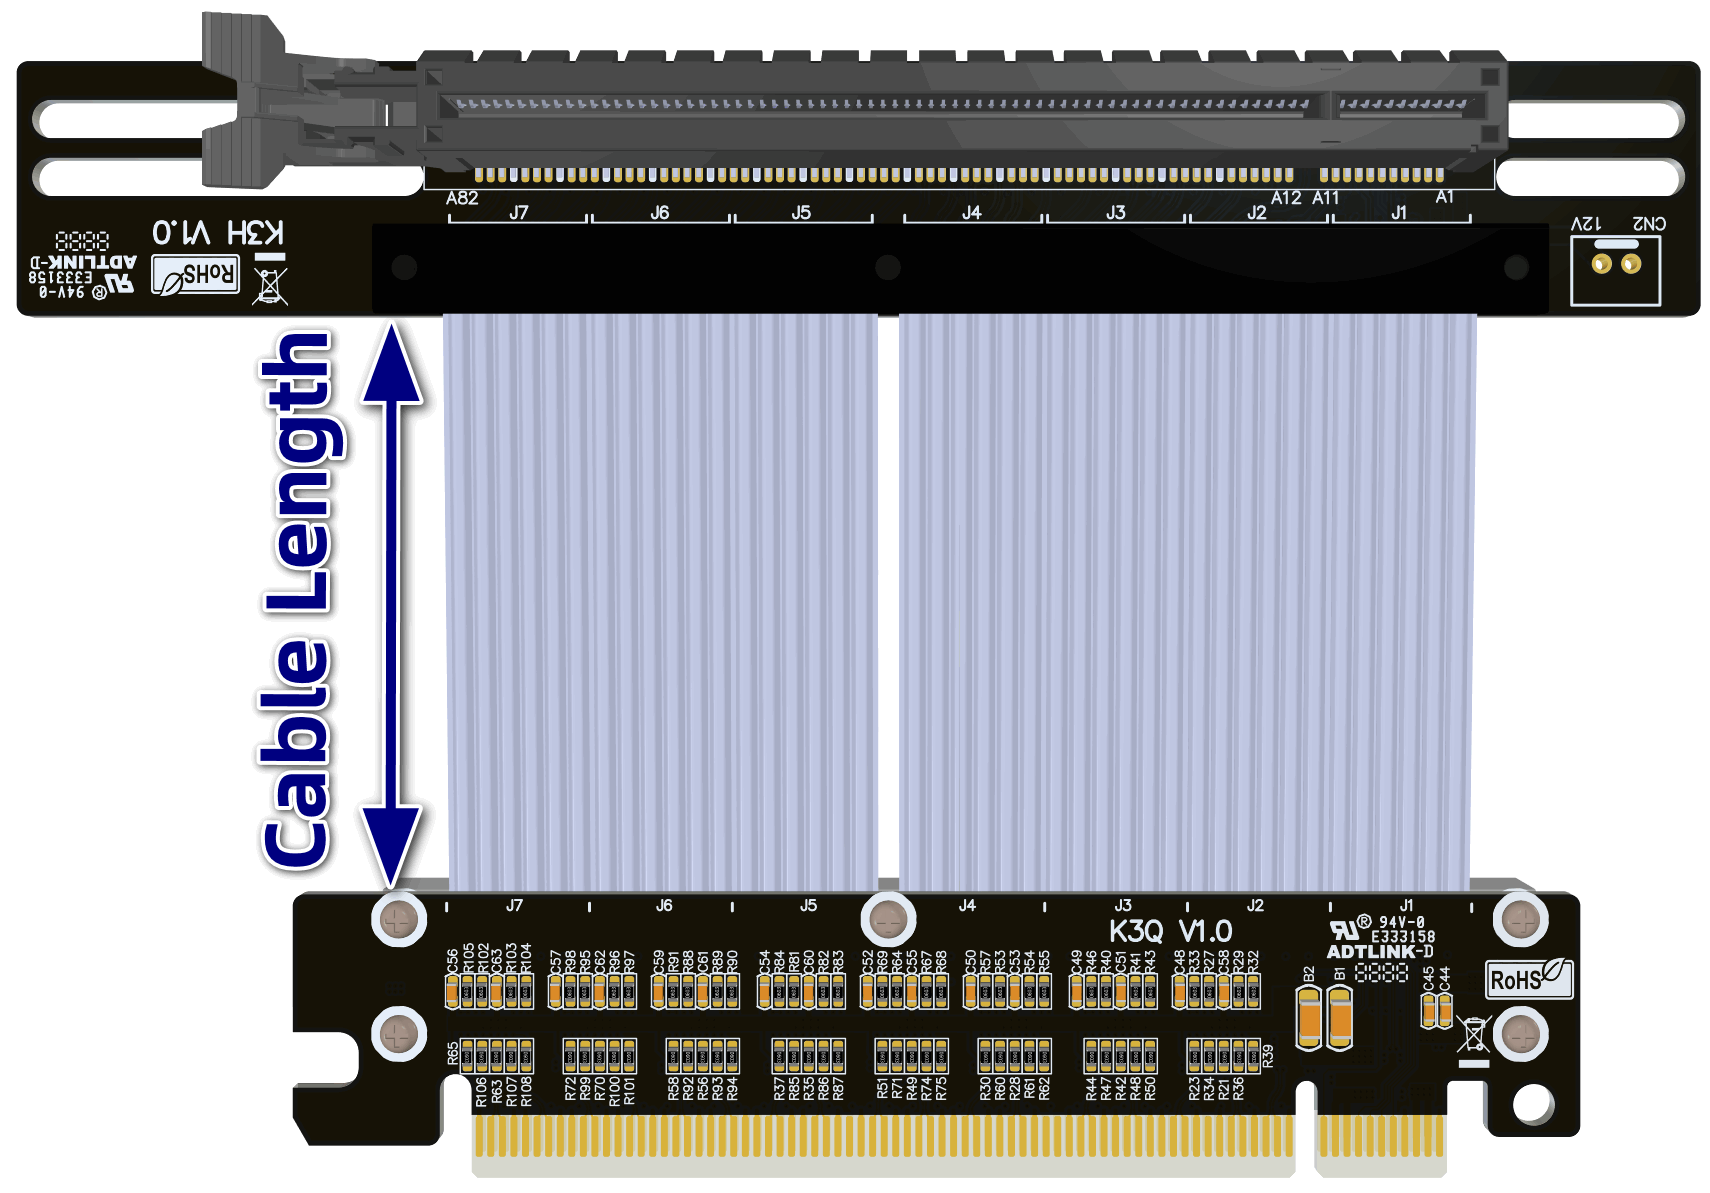 2023 PCIE mới 4.0 x16 Cáp Riser RTX 4090 Đồ họa card video Gen5/4 Cáp mở rộng linh hoạt tốc độ cao PCI-E Riser GPU ITX A4